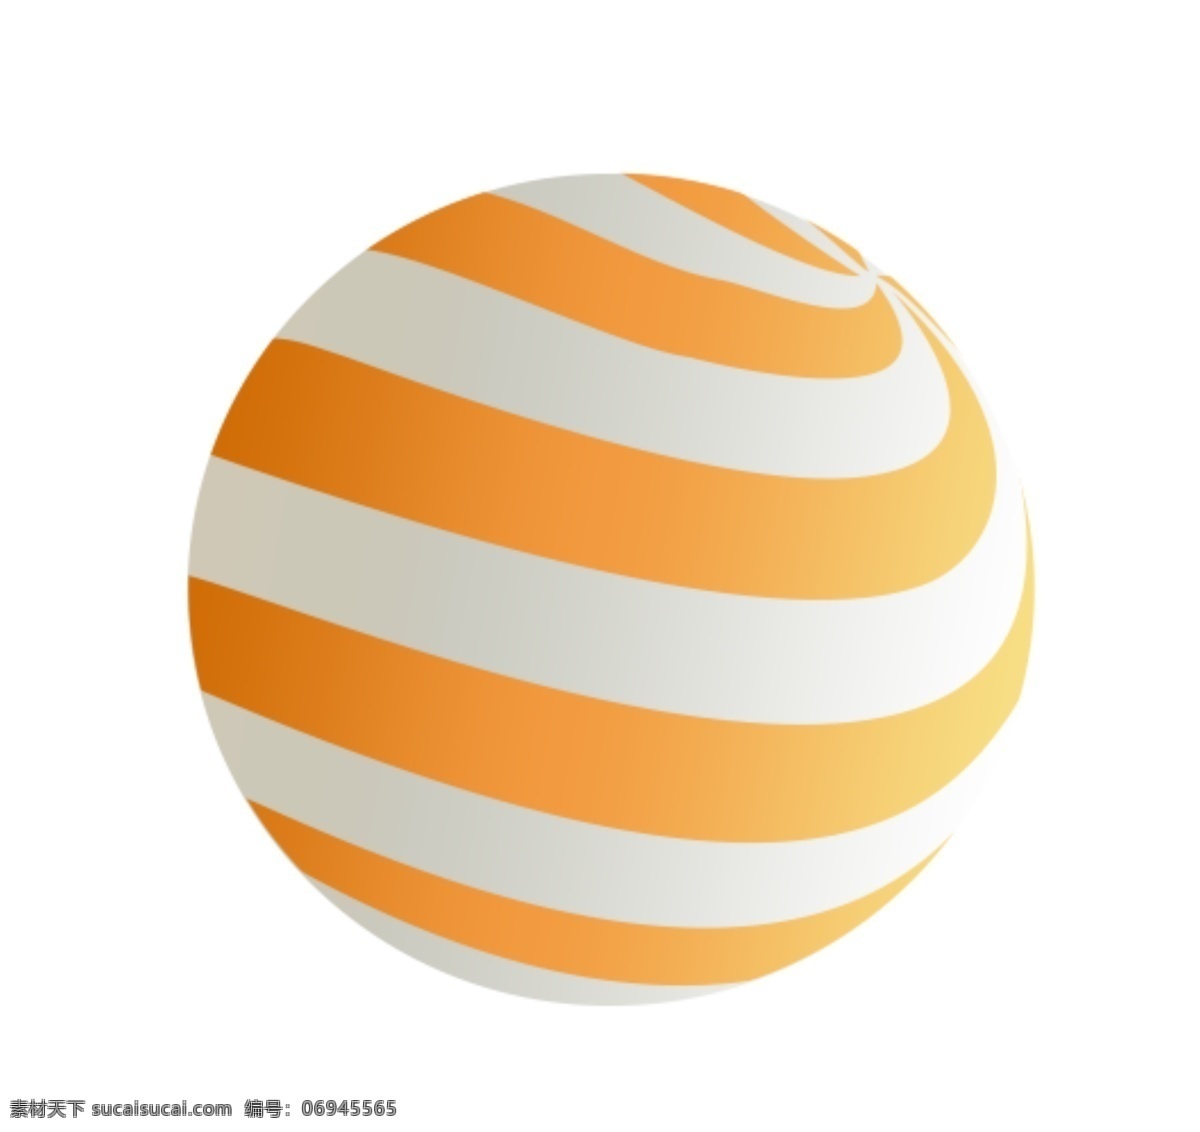 圆球素材 矢量素材 无限放大 圆球 装饰素材 海报素材 分层